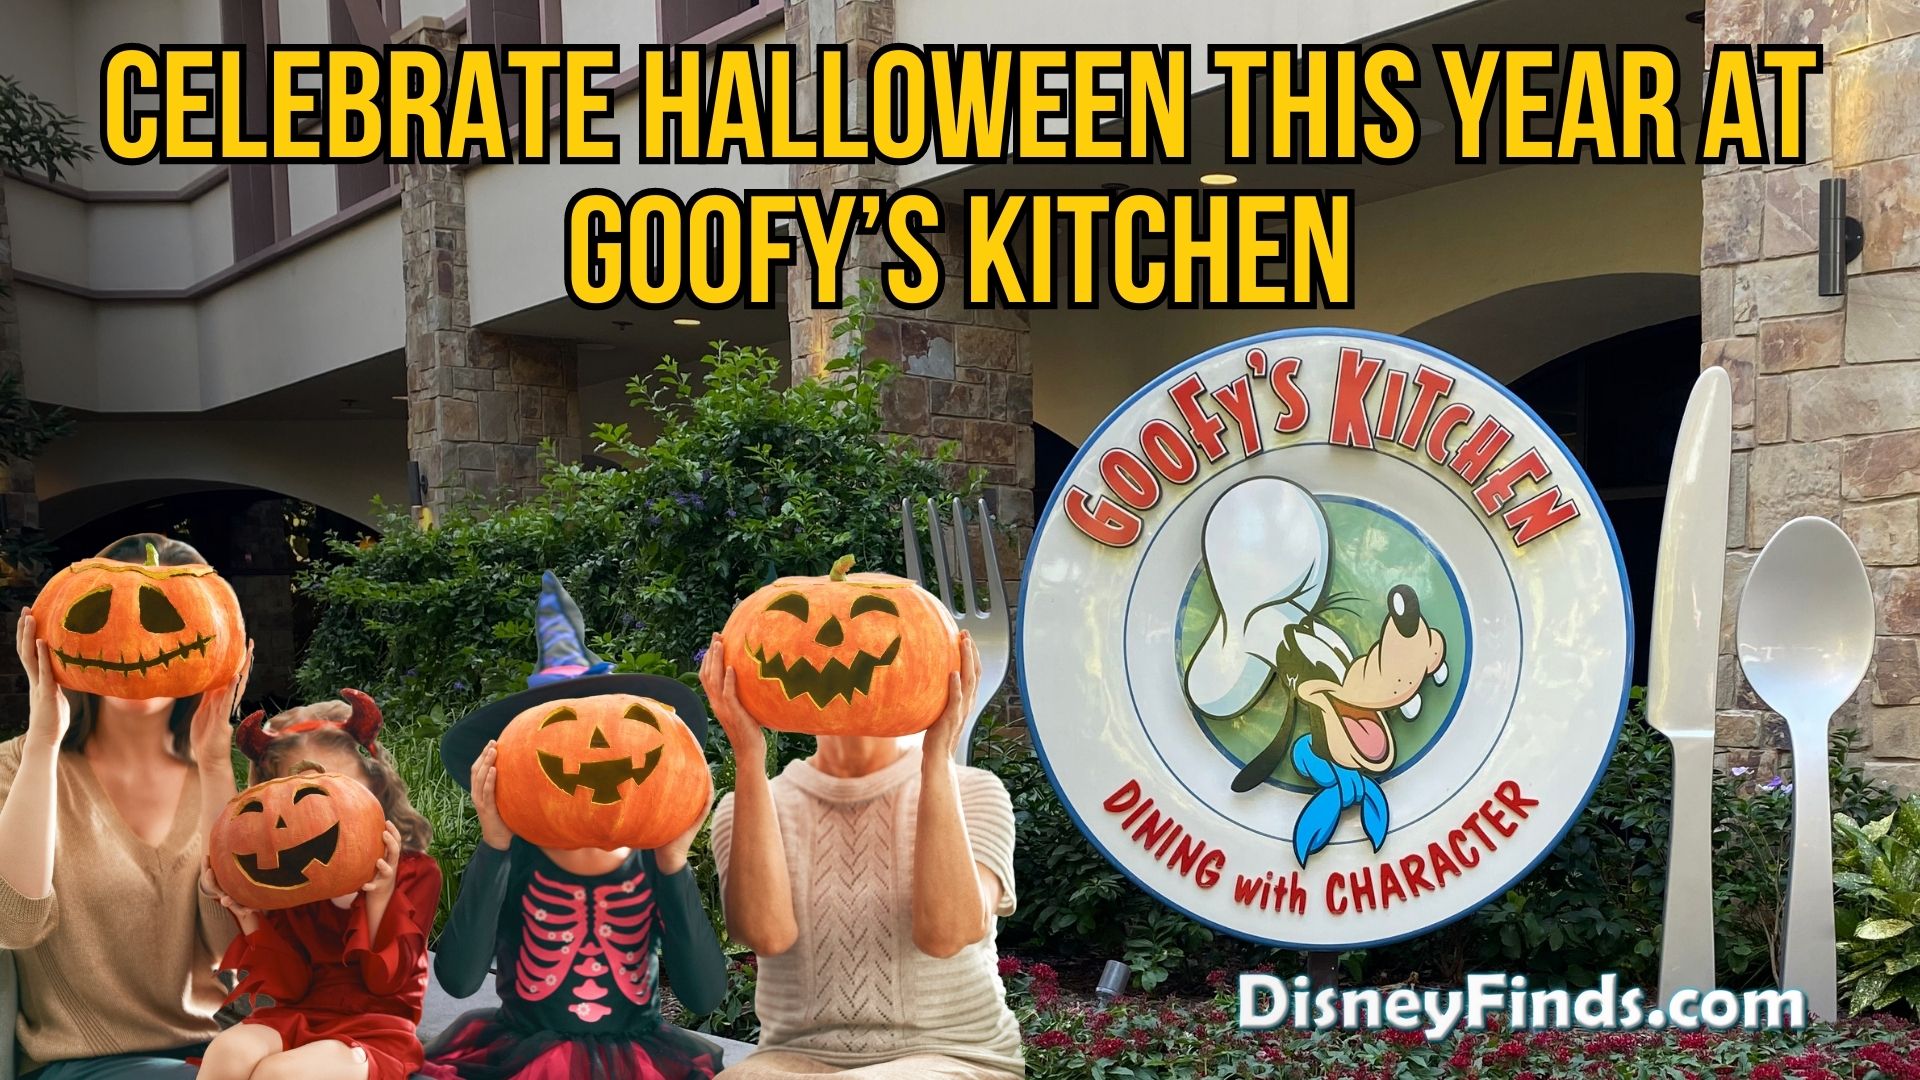 Goofys Kitchen Halloween 